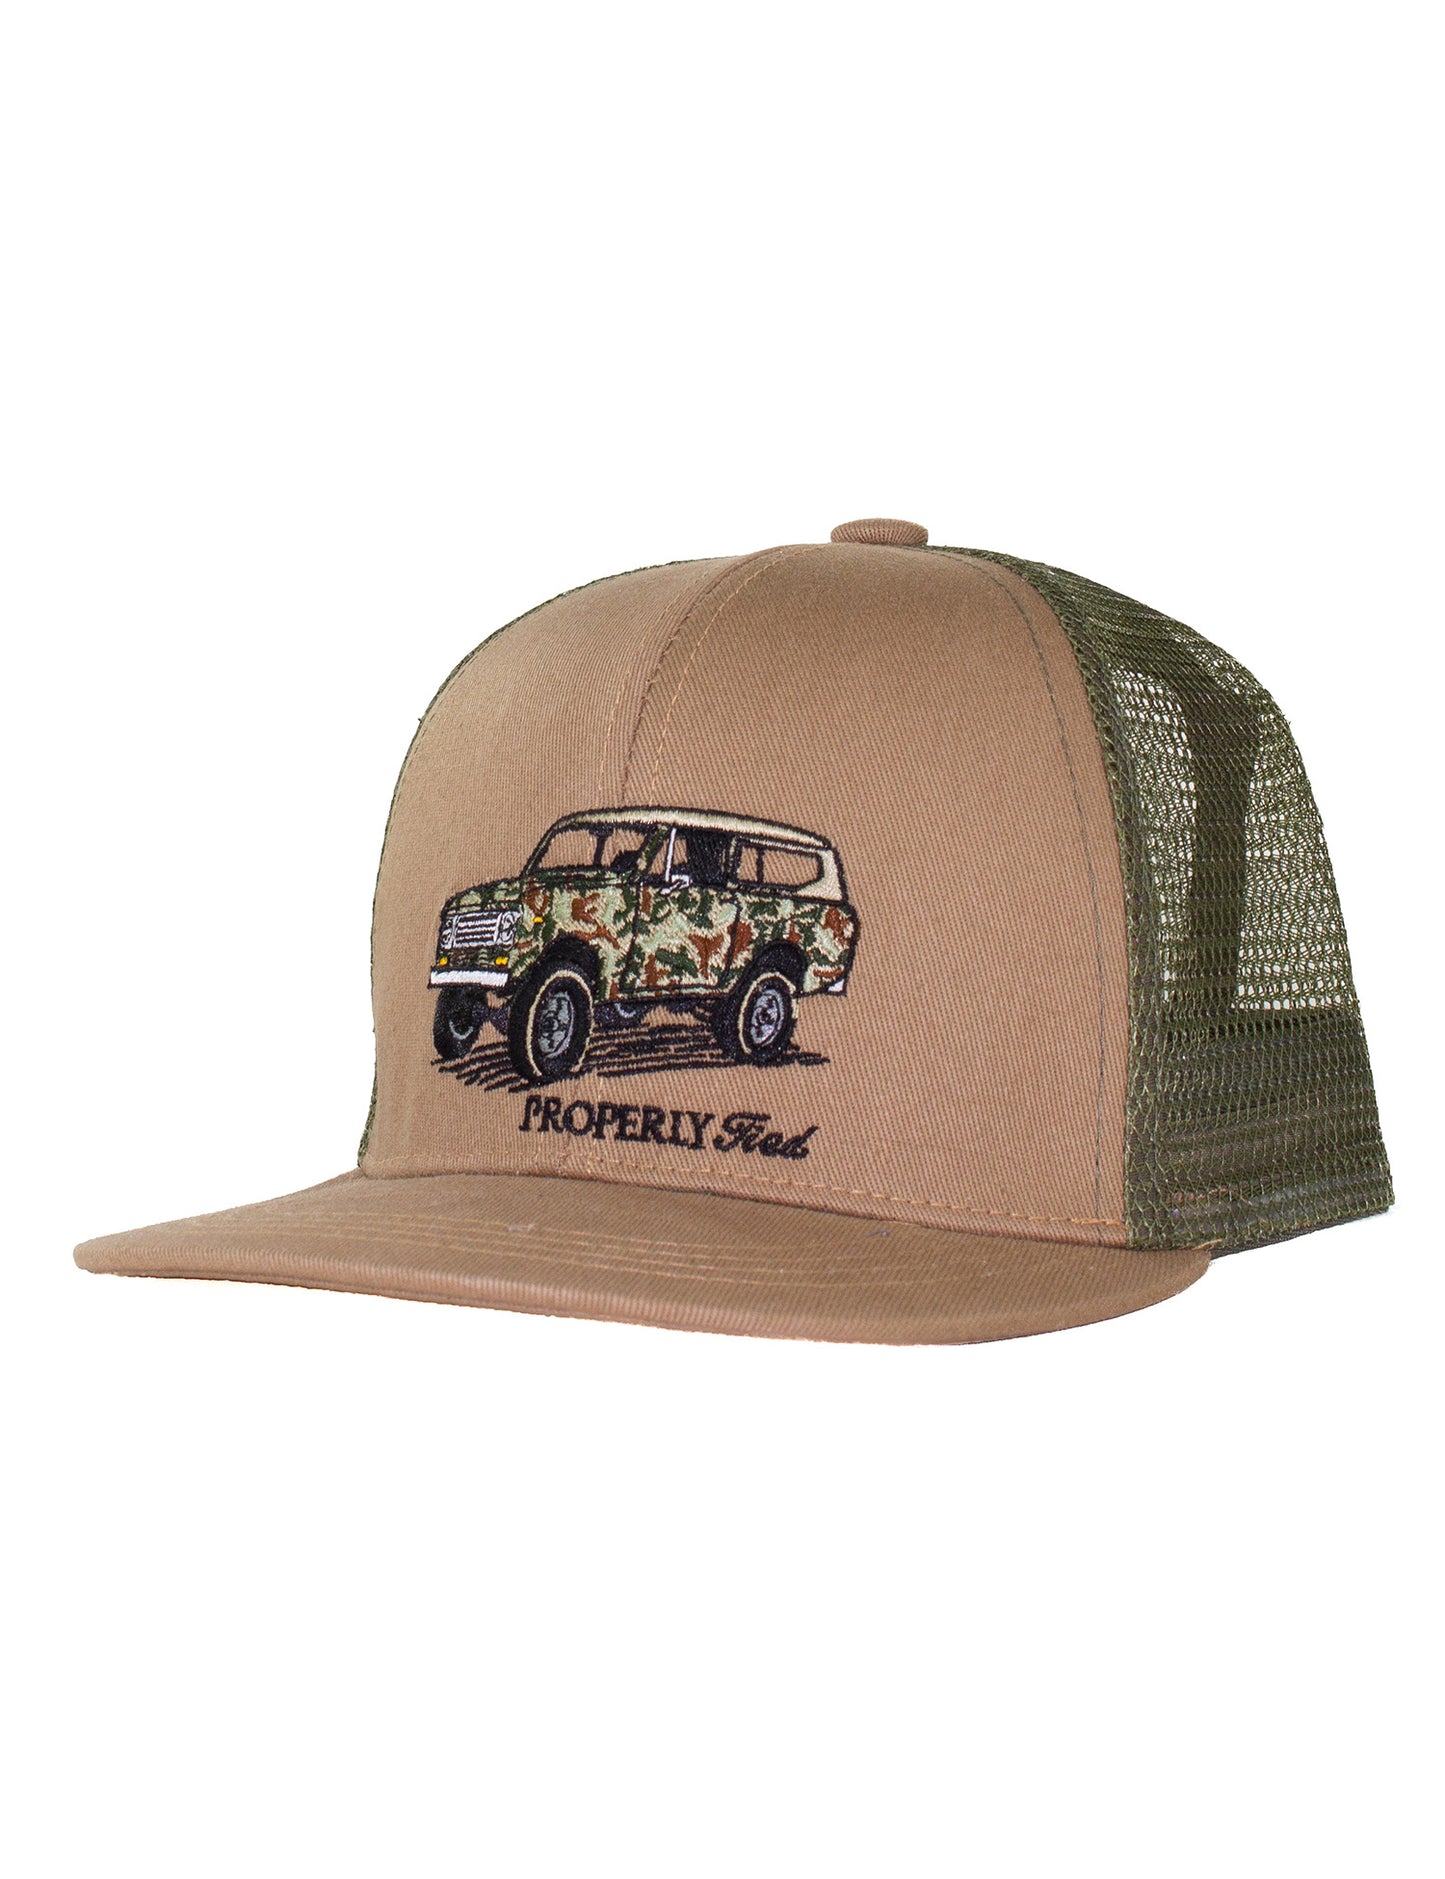 Trucker Hat | Camo Truck